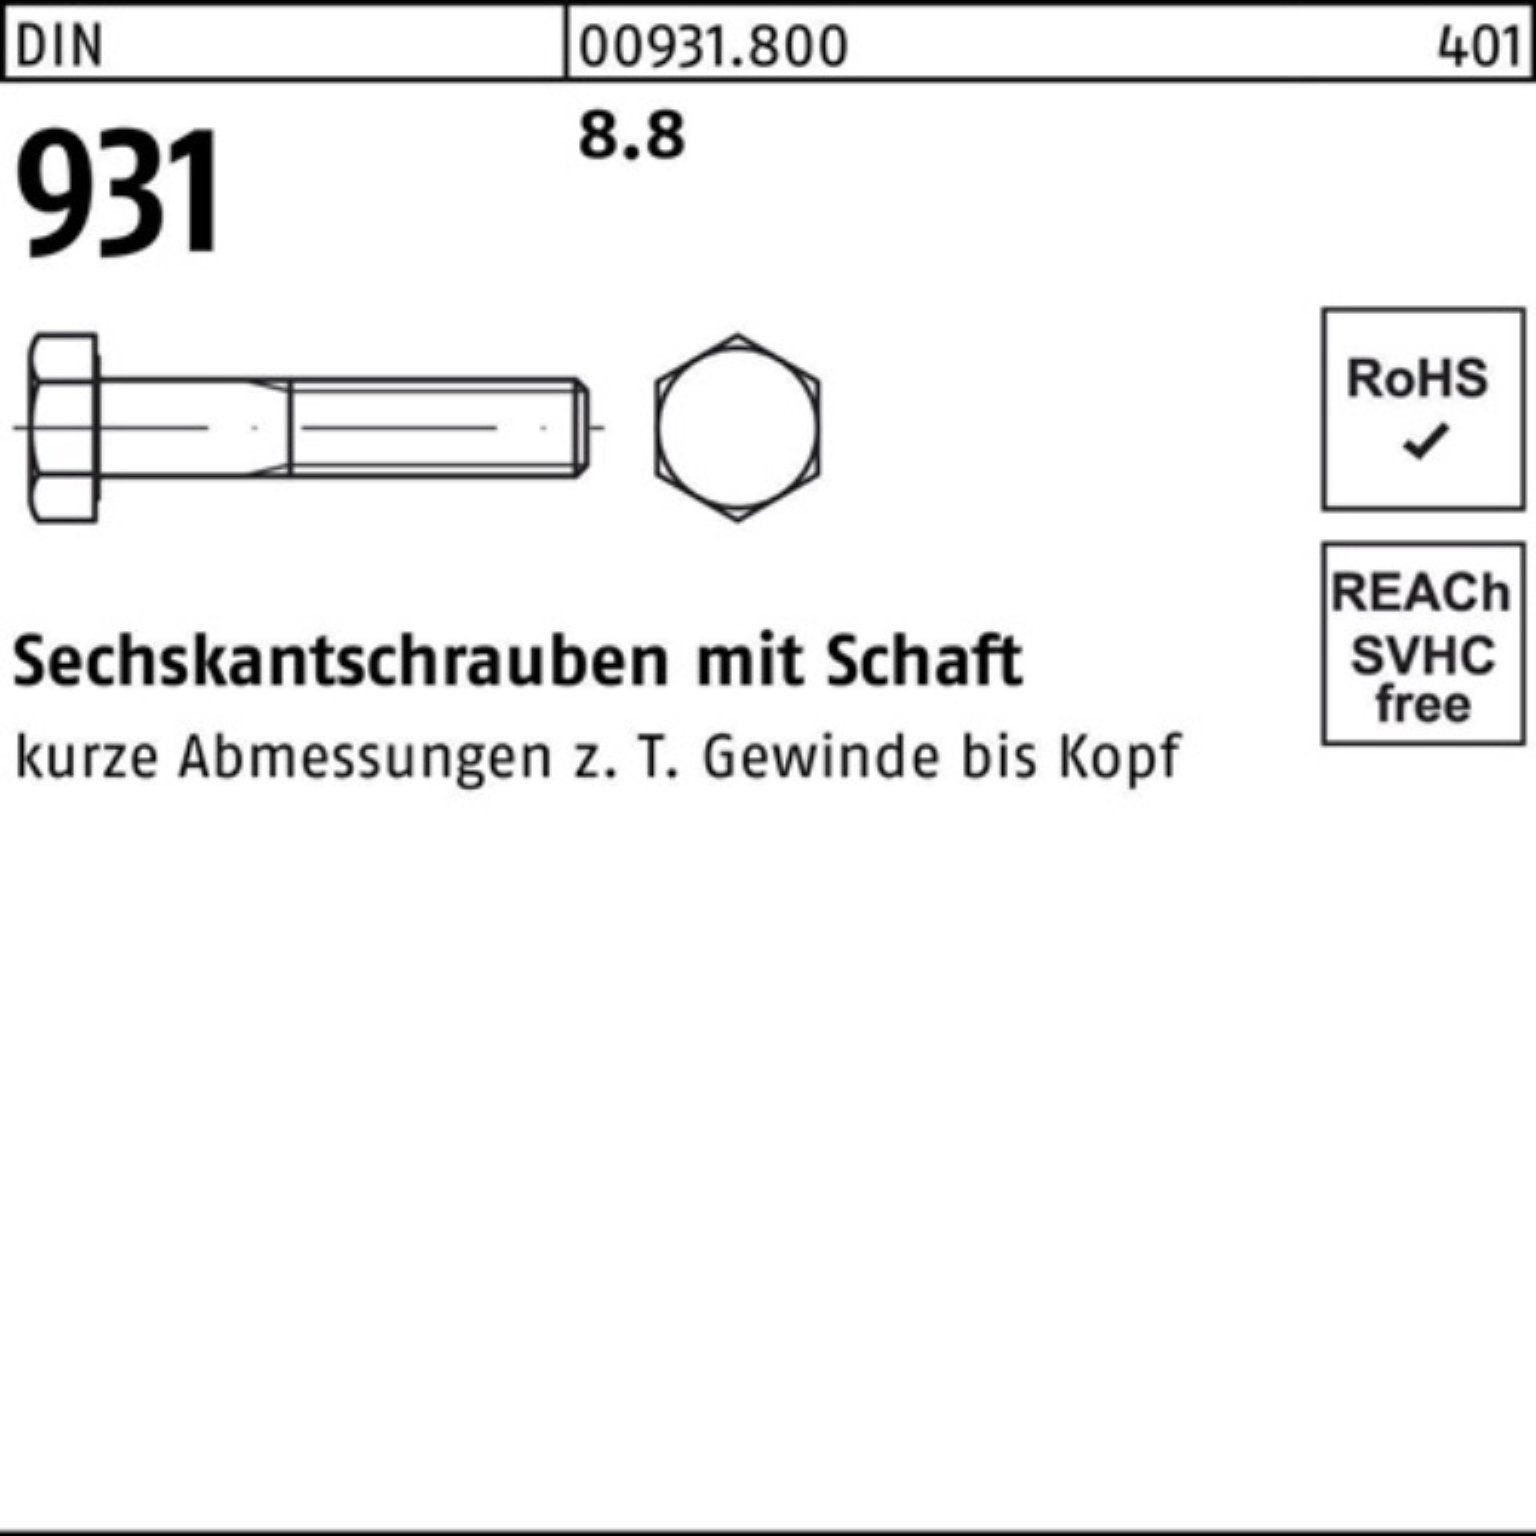 8.8 M42x 100er 340 Sechskantschraube Sechskantschraube Reyher Schaft 1 Pack 931 DIN Stück DIN